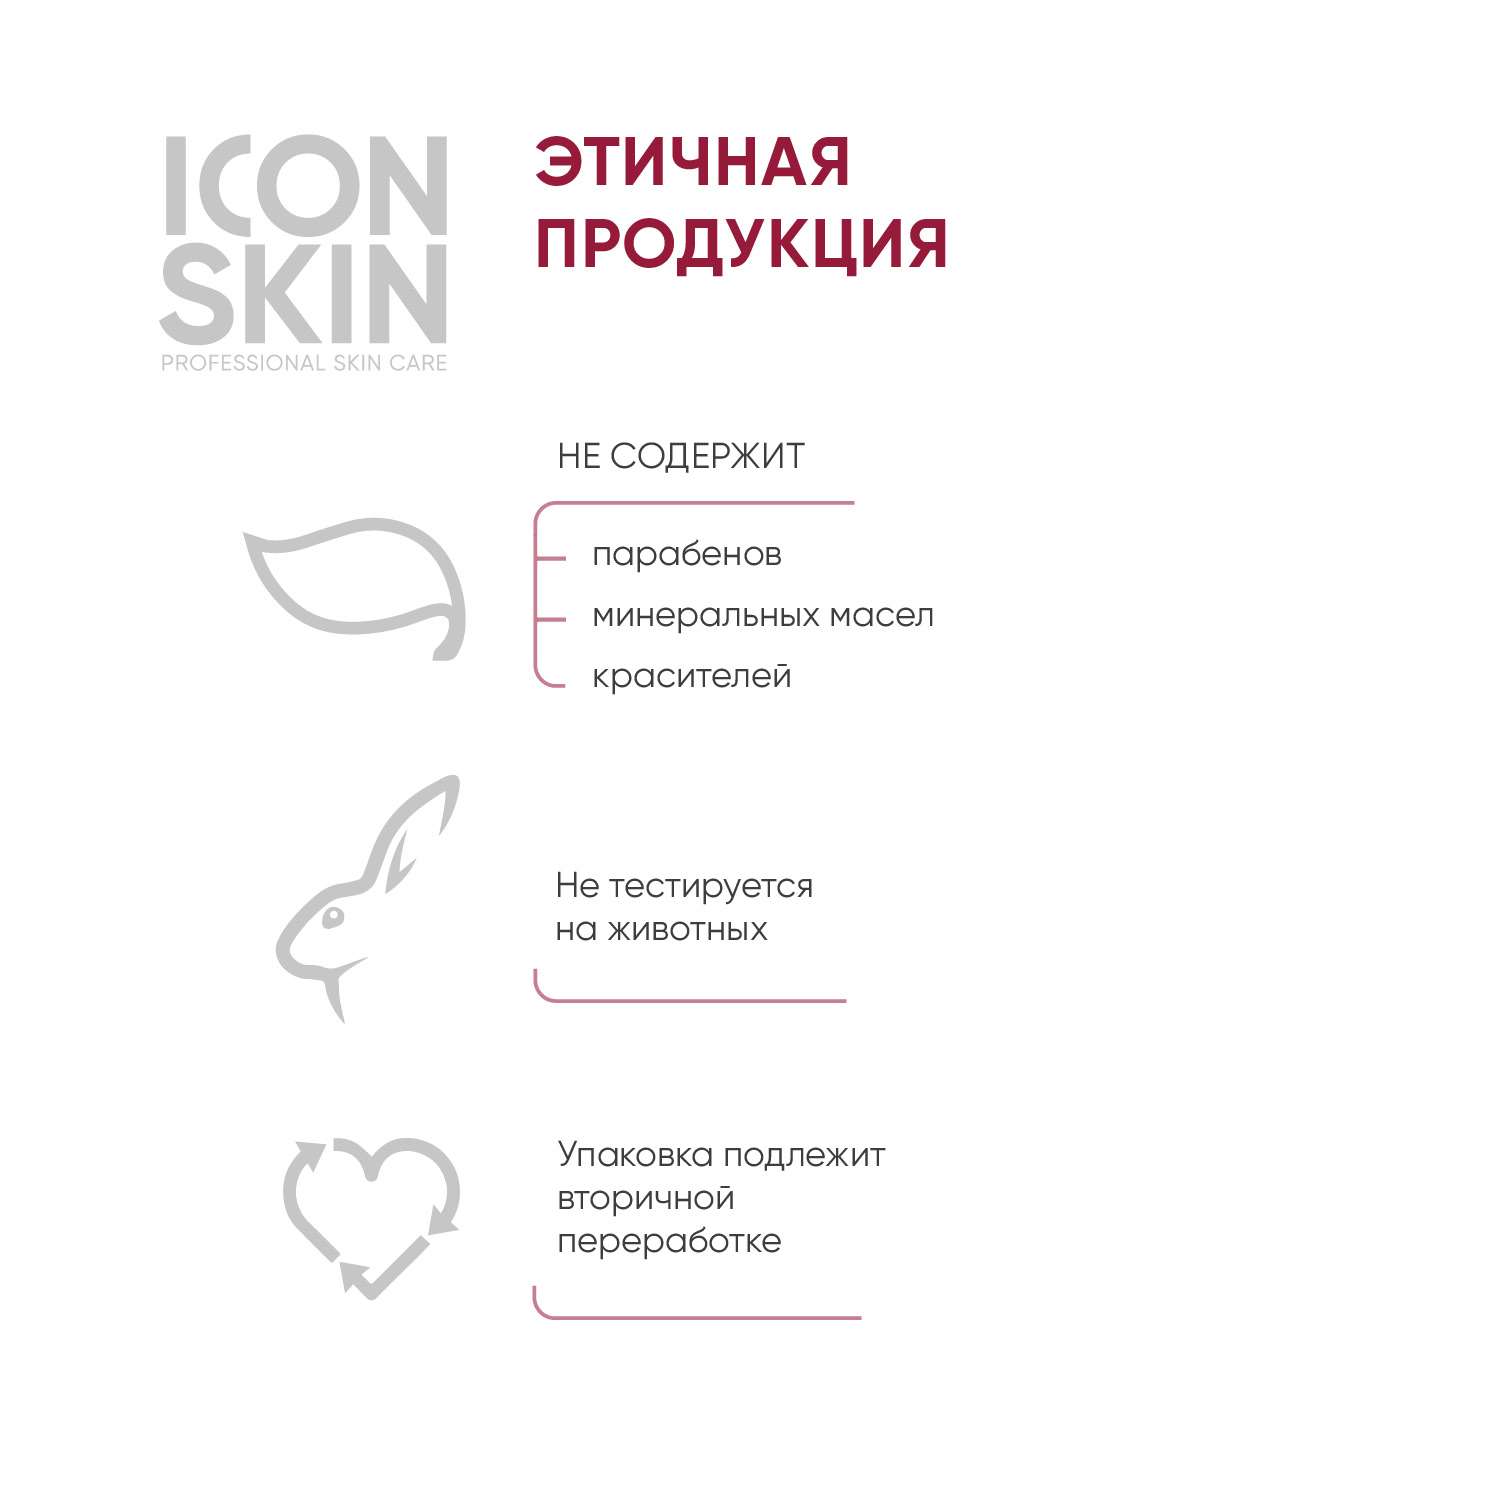 Пилинг ICON SKIN интенсивный пептидный 15% 30 мл - фото 9